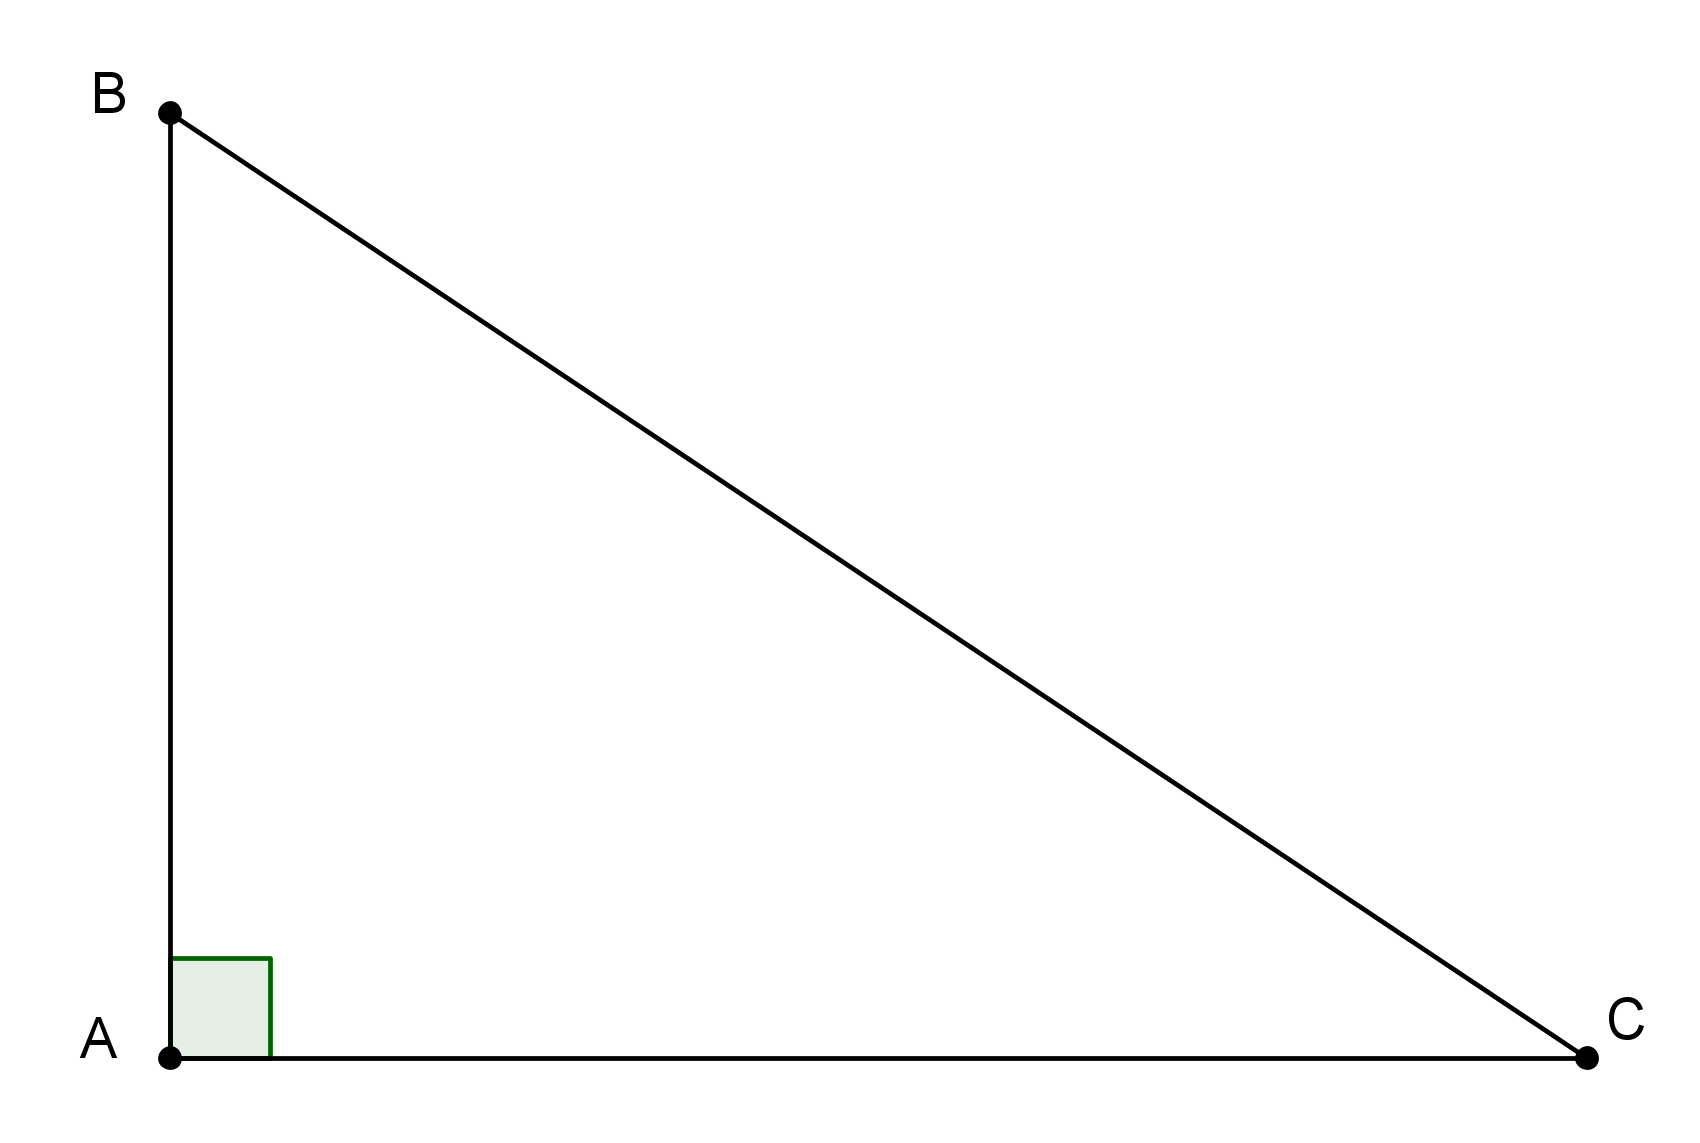 Triangulo Escaleno